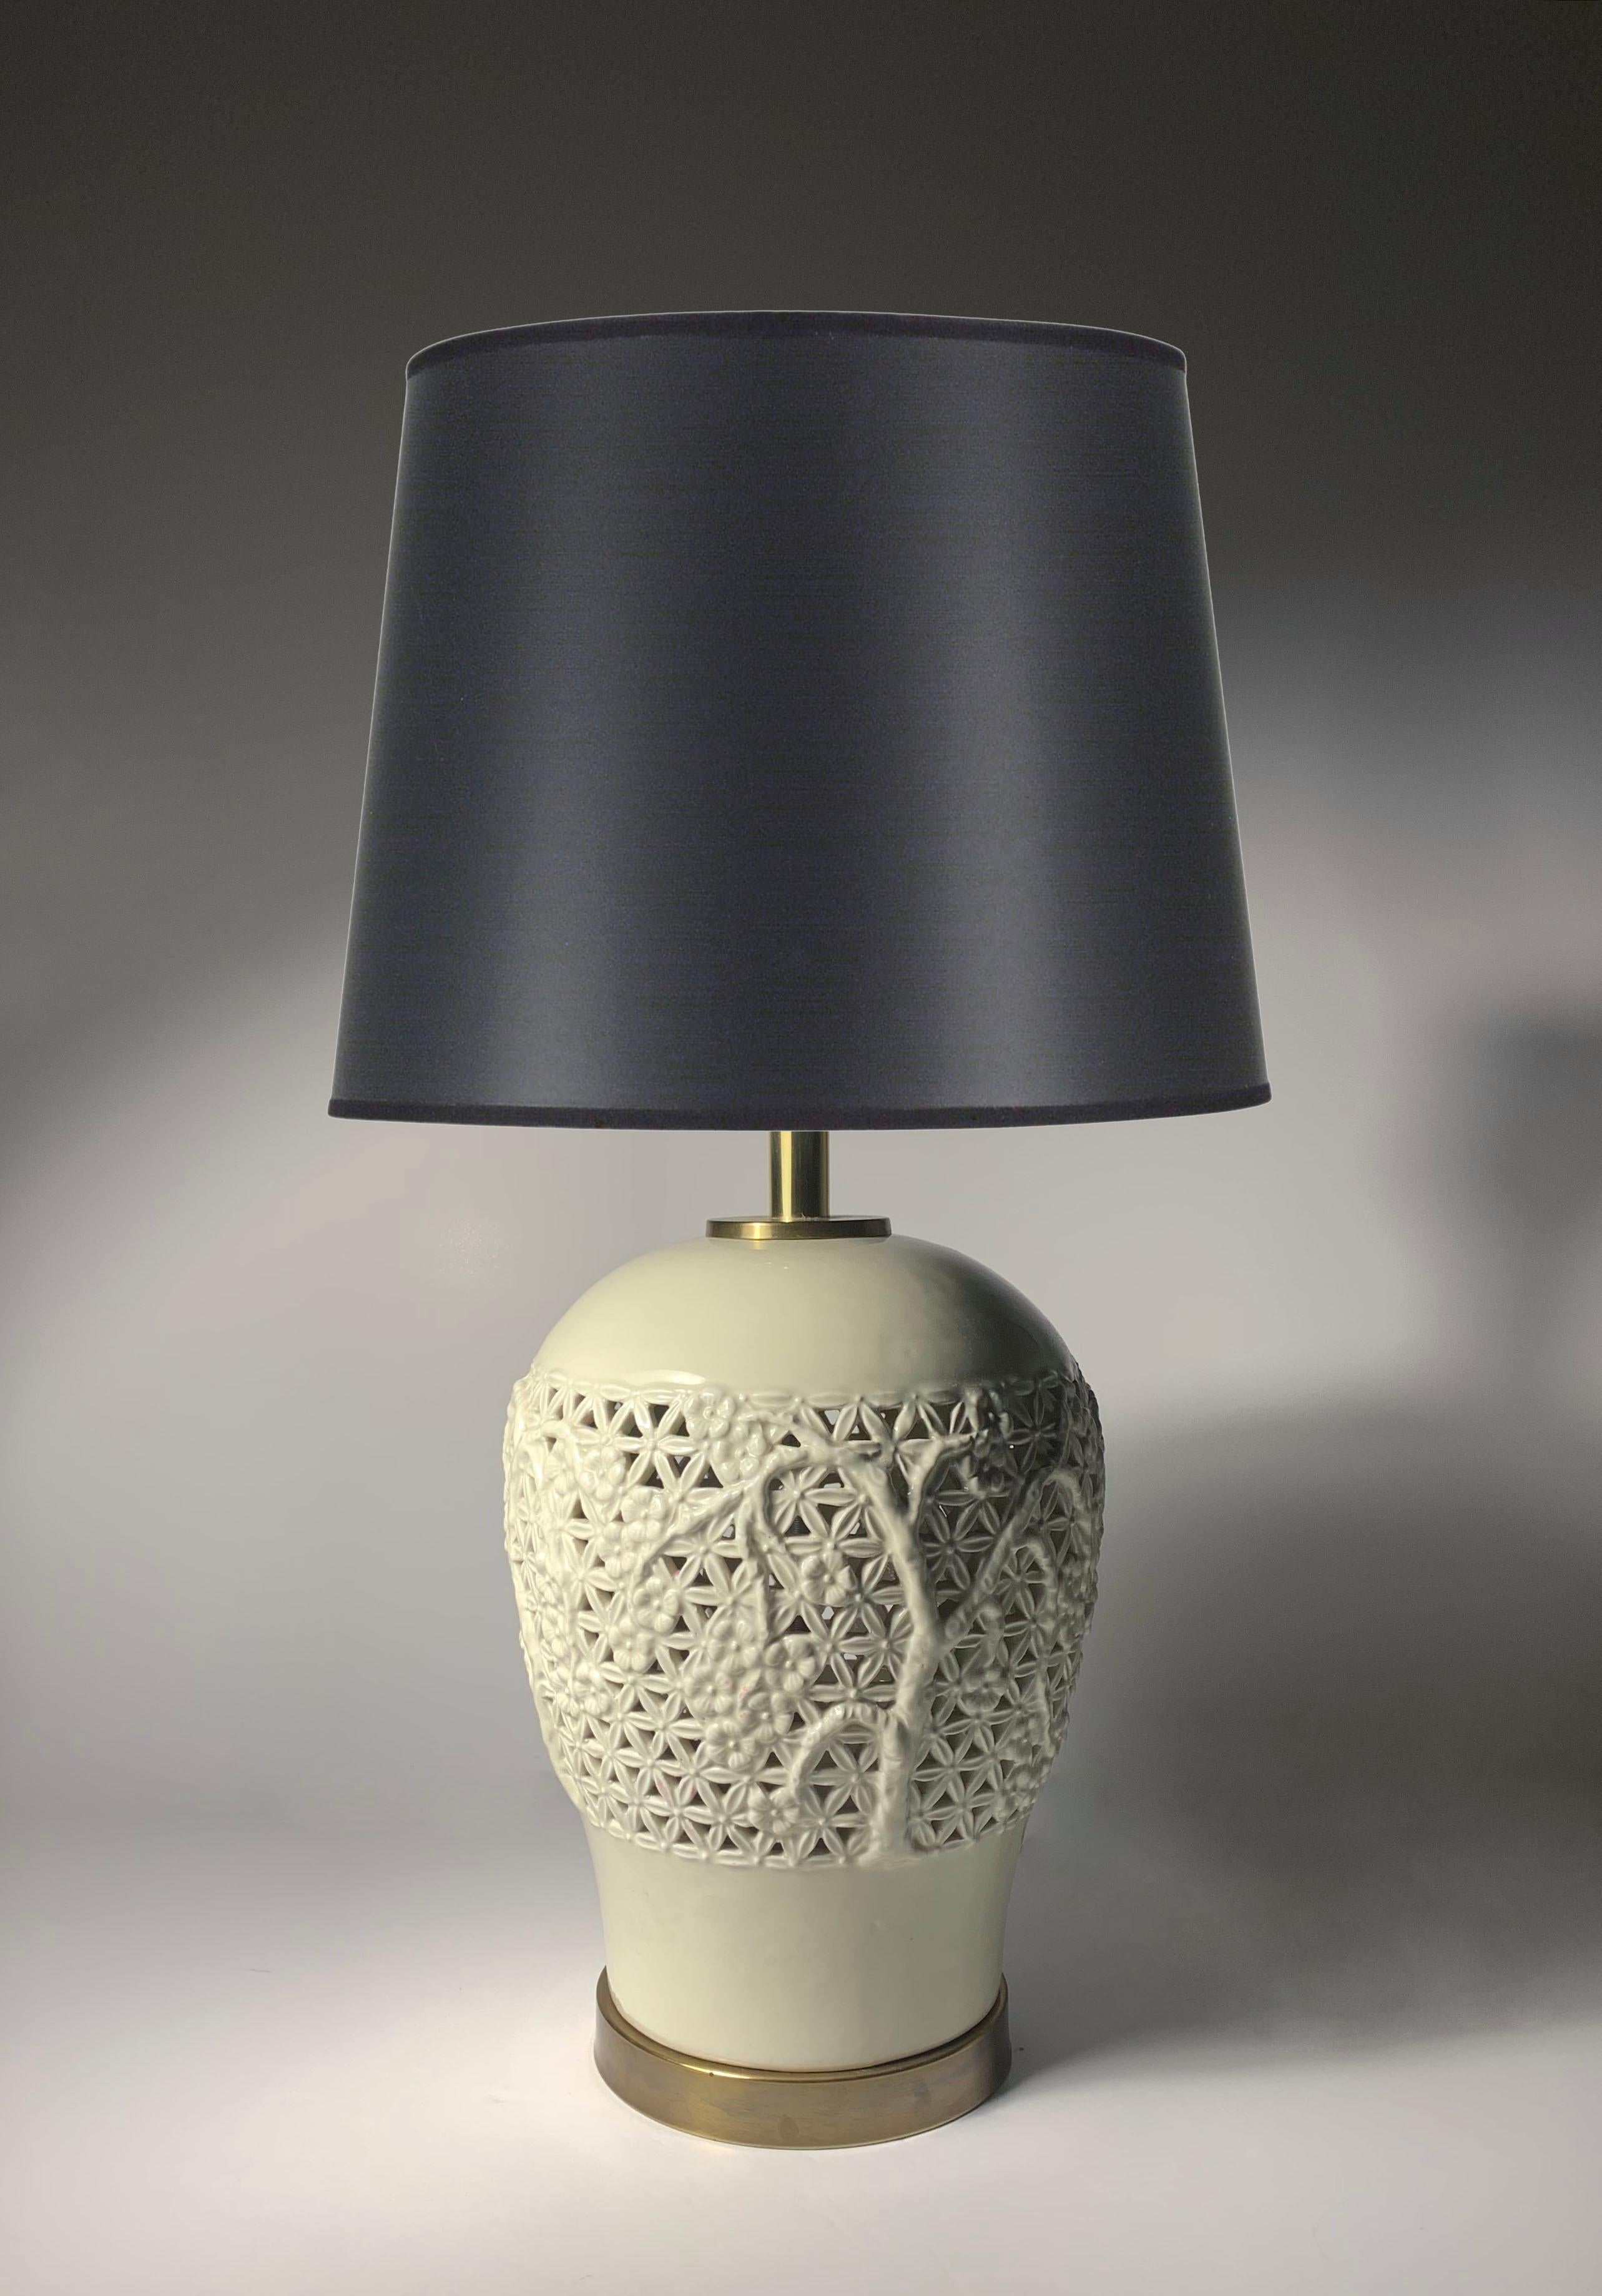 Lampes italiennes vintage complexes en porcelaine de style chinoiserie

Manière de Ugo Zaccaganini

Hauteur de 28